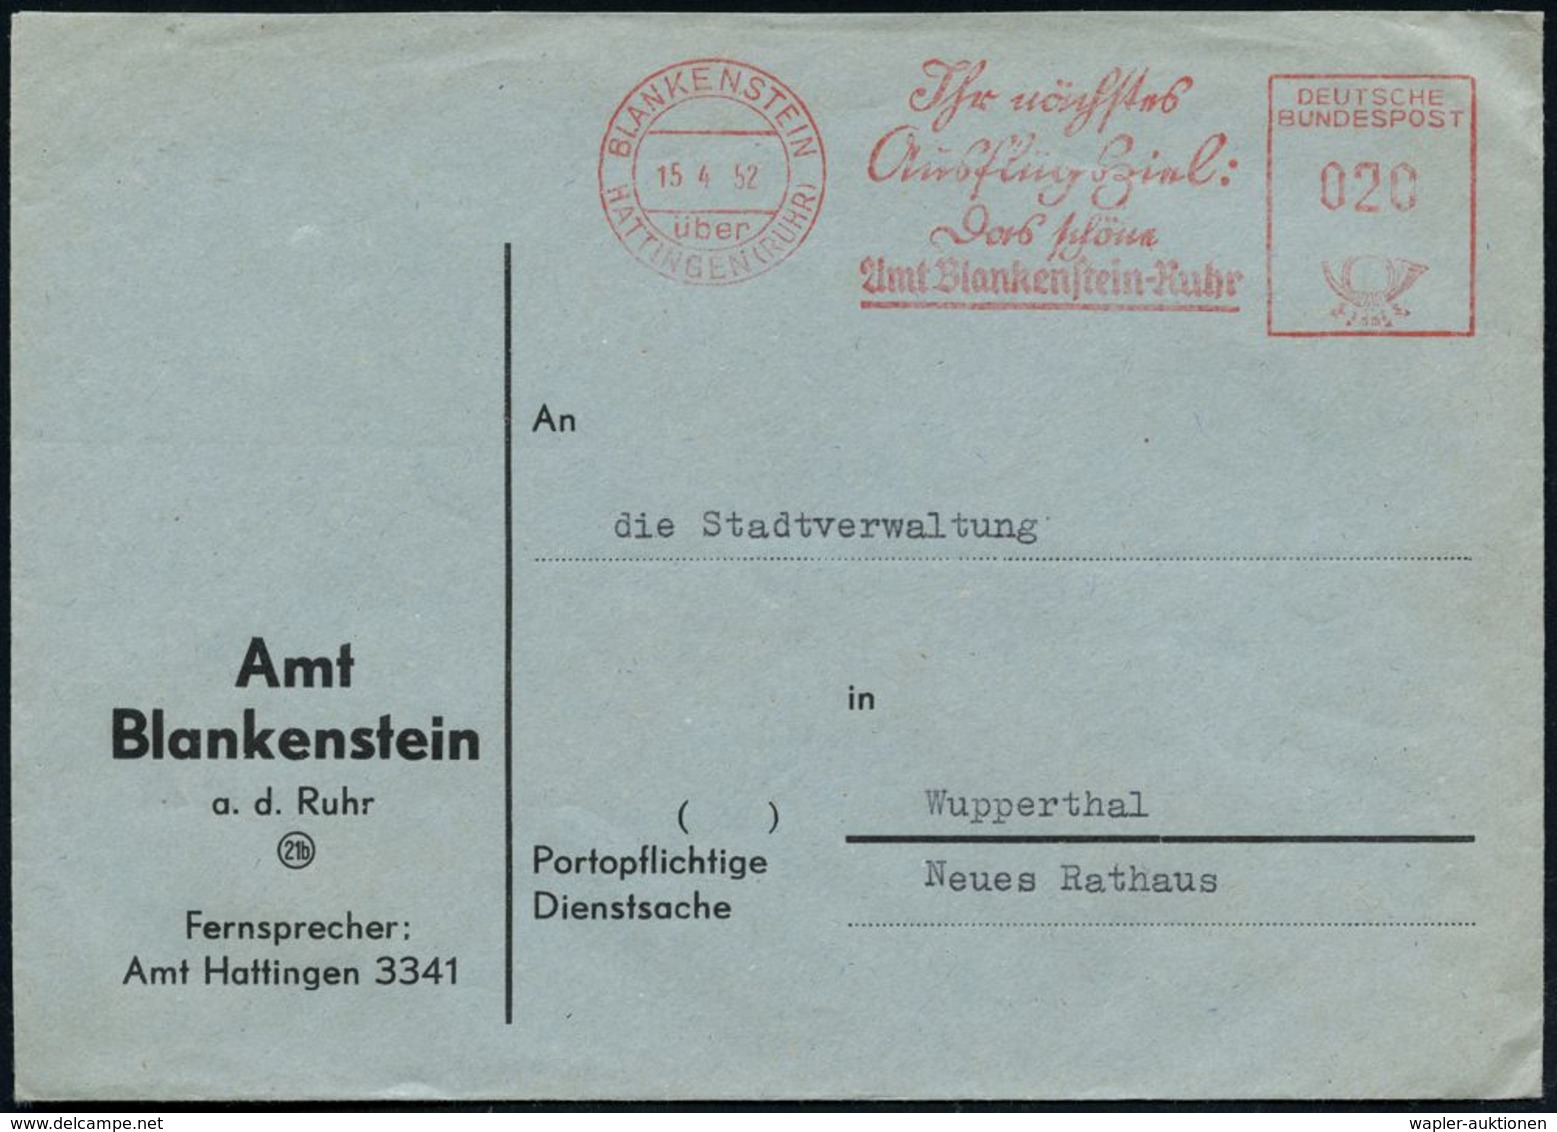 BLANKENSTEIN/ über/ HATTINGEN (RUHR)/ Jhr Nächstes/ Ausflugsziel:/ Das Schöne/ Amt Blankenstein-Ruhr 1952 (15.4.) AFS, T - Non Classificati